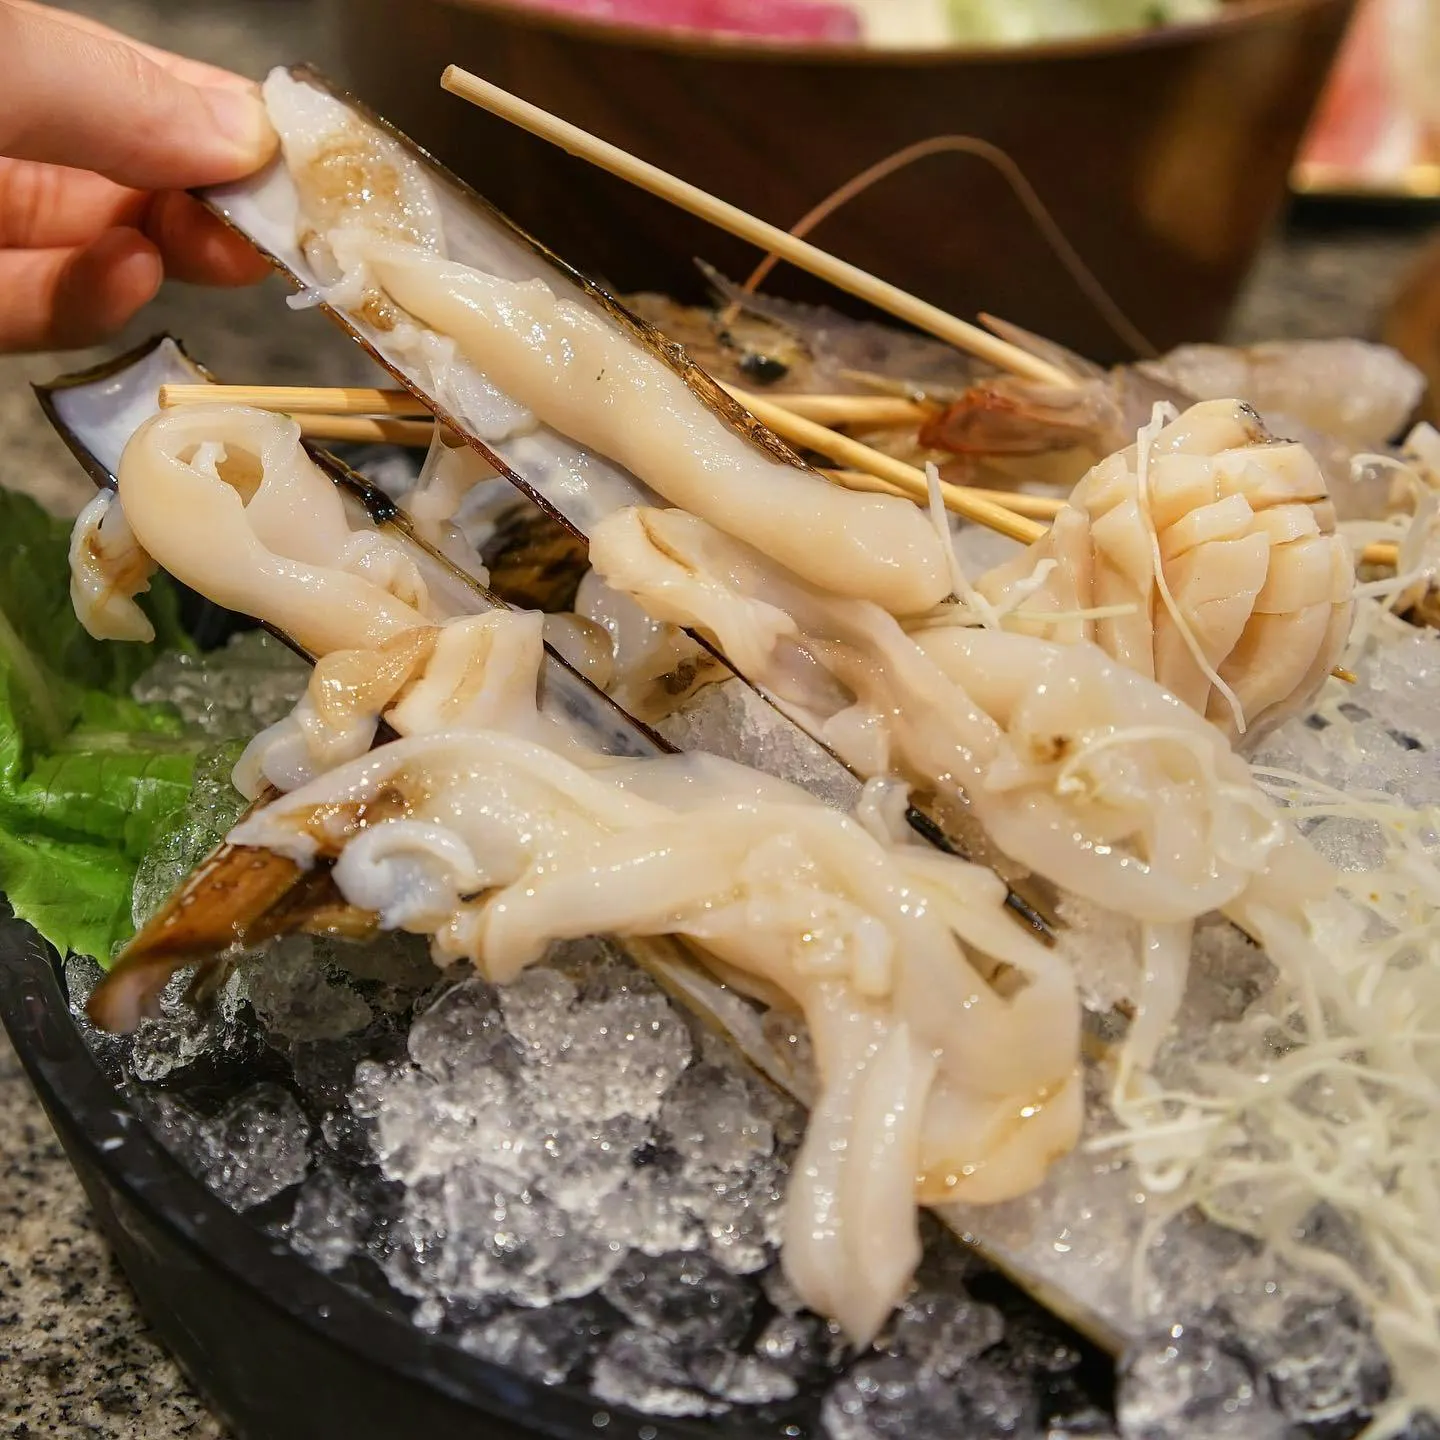 Chơi Chất Chill: Những nhà hàng lẩu ngon nhất nên thử ở Hồng Kông